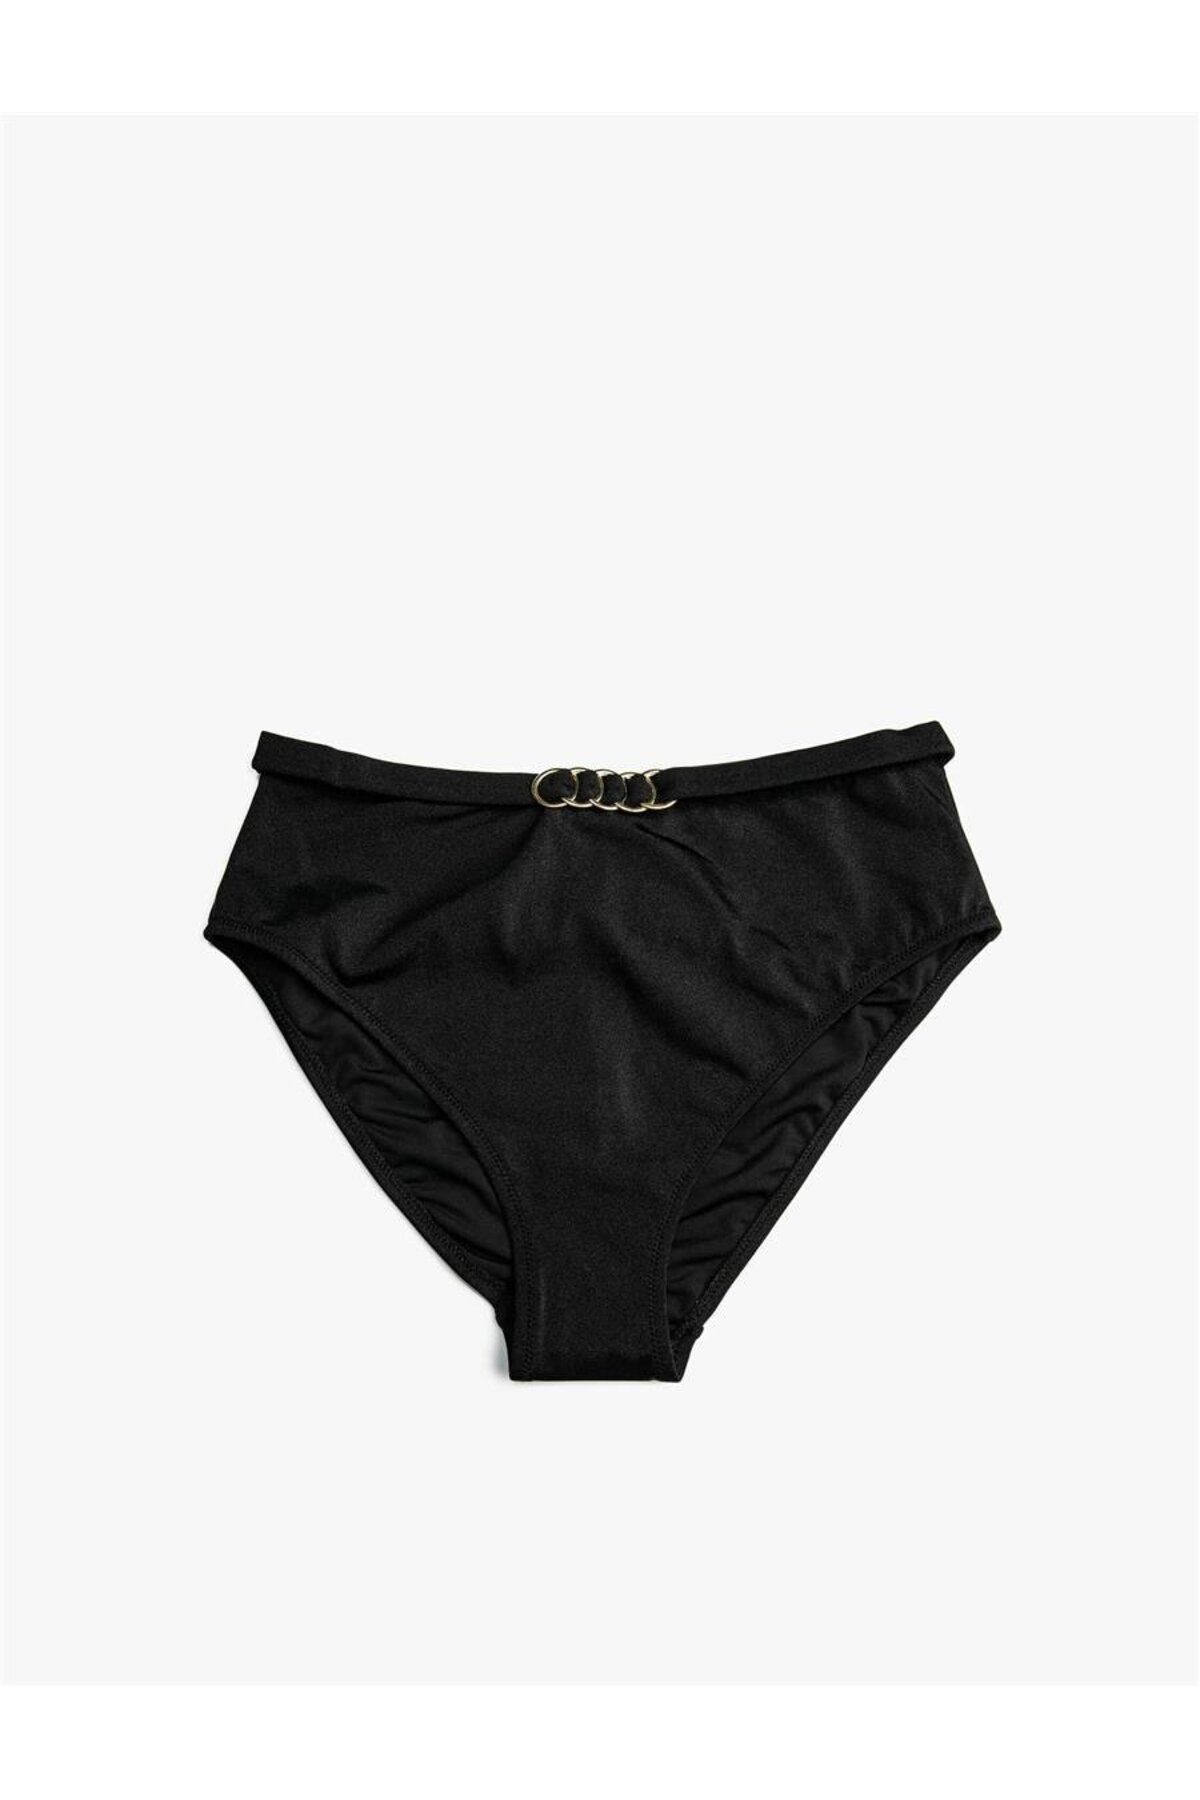 Koton 3sak00027bm Siyah 999 Kadın Elastan Swimwear Bikini Alt